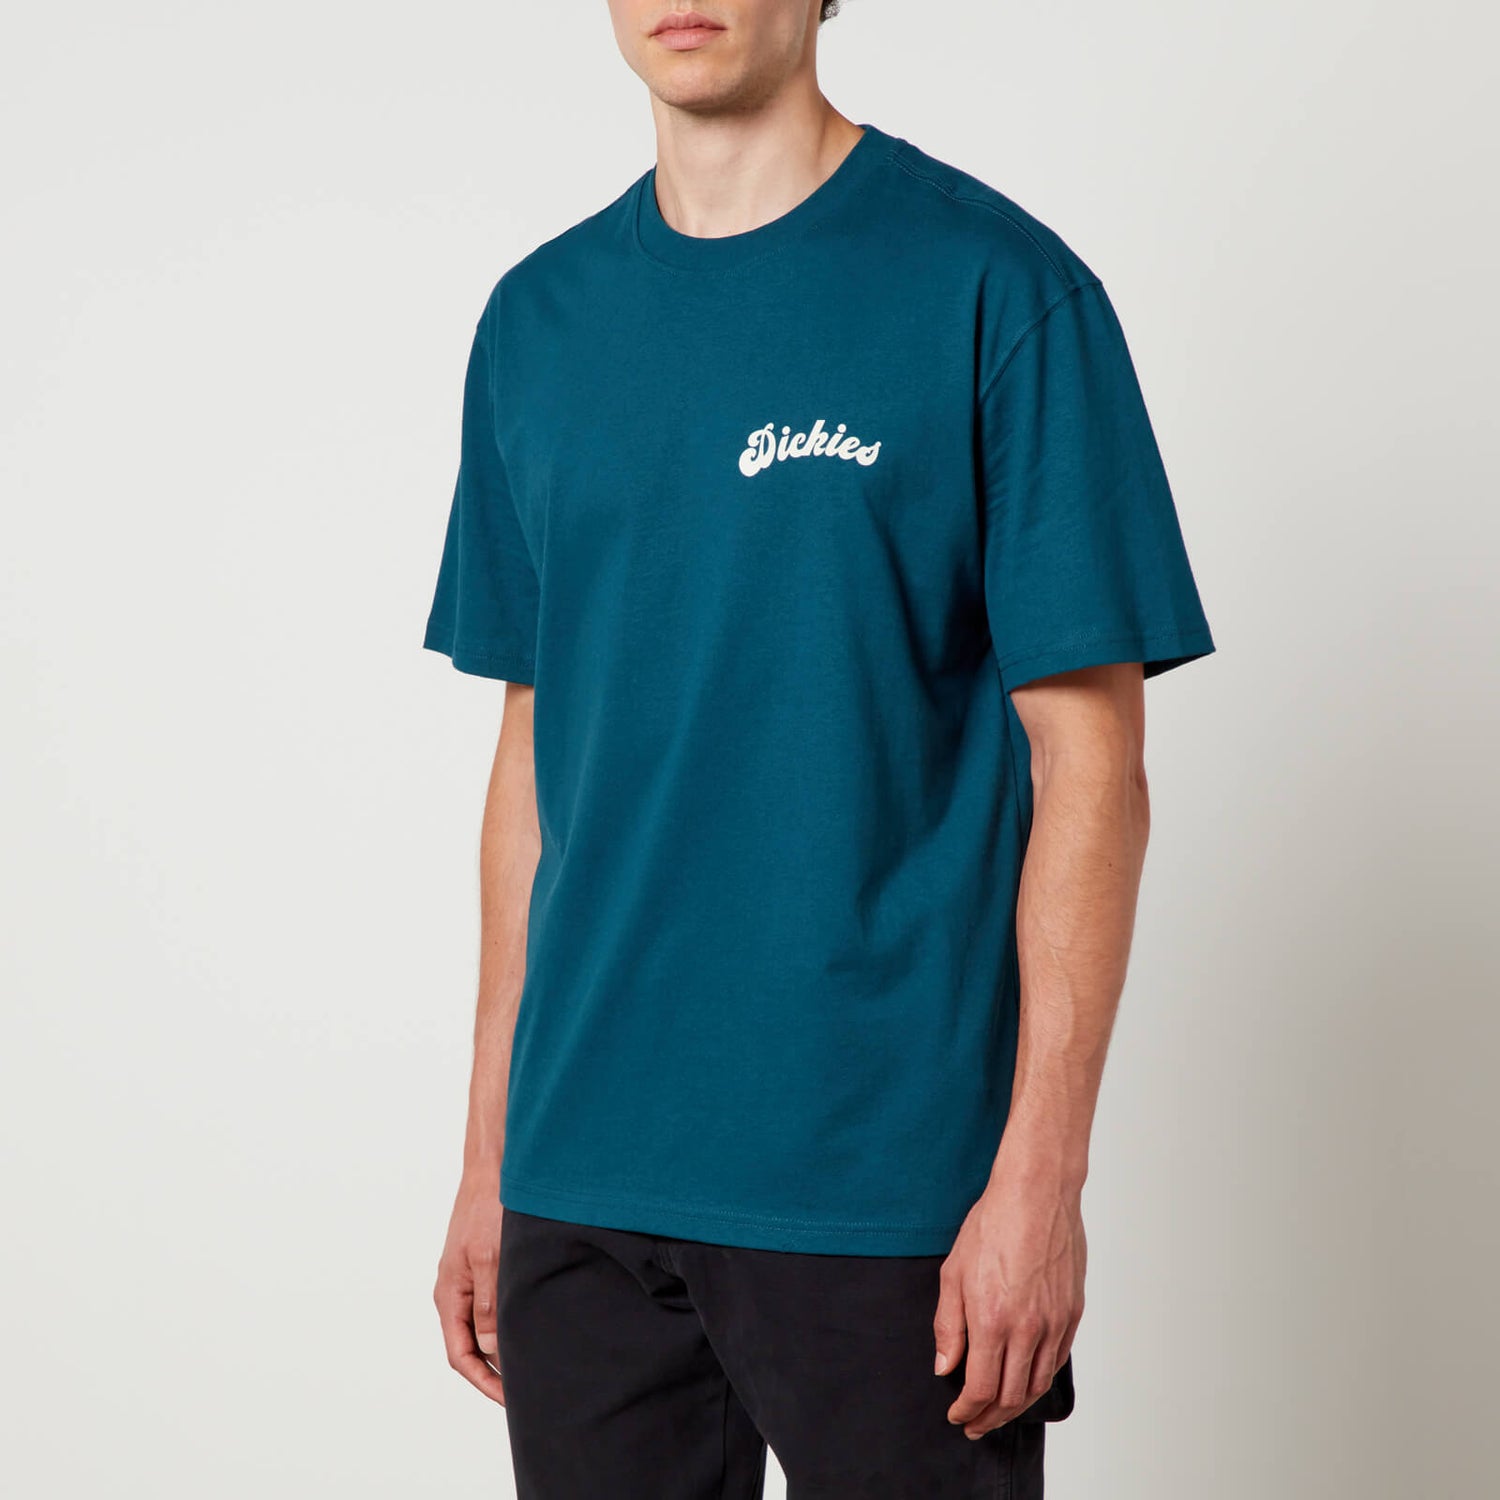 Dickies Grainfield Cotton-Jersey T-Shirt - S